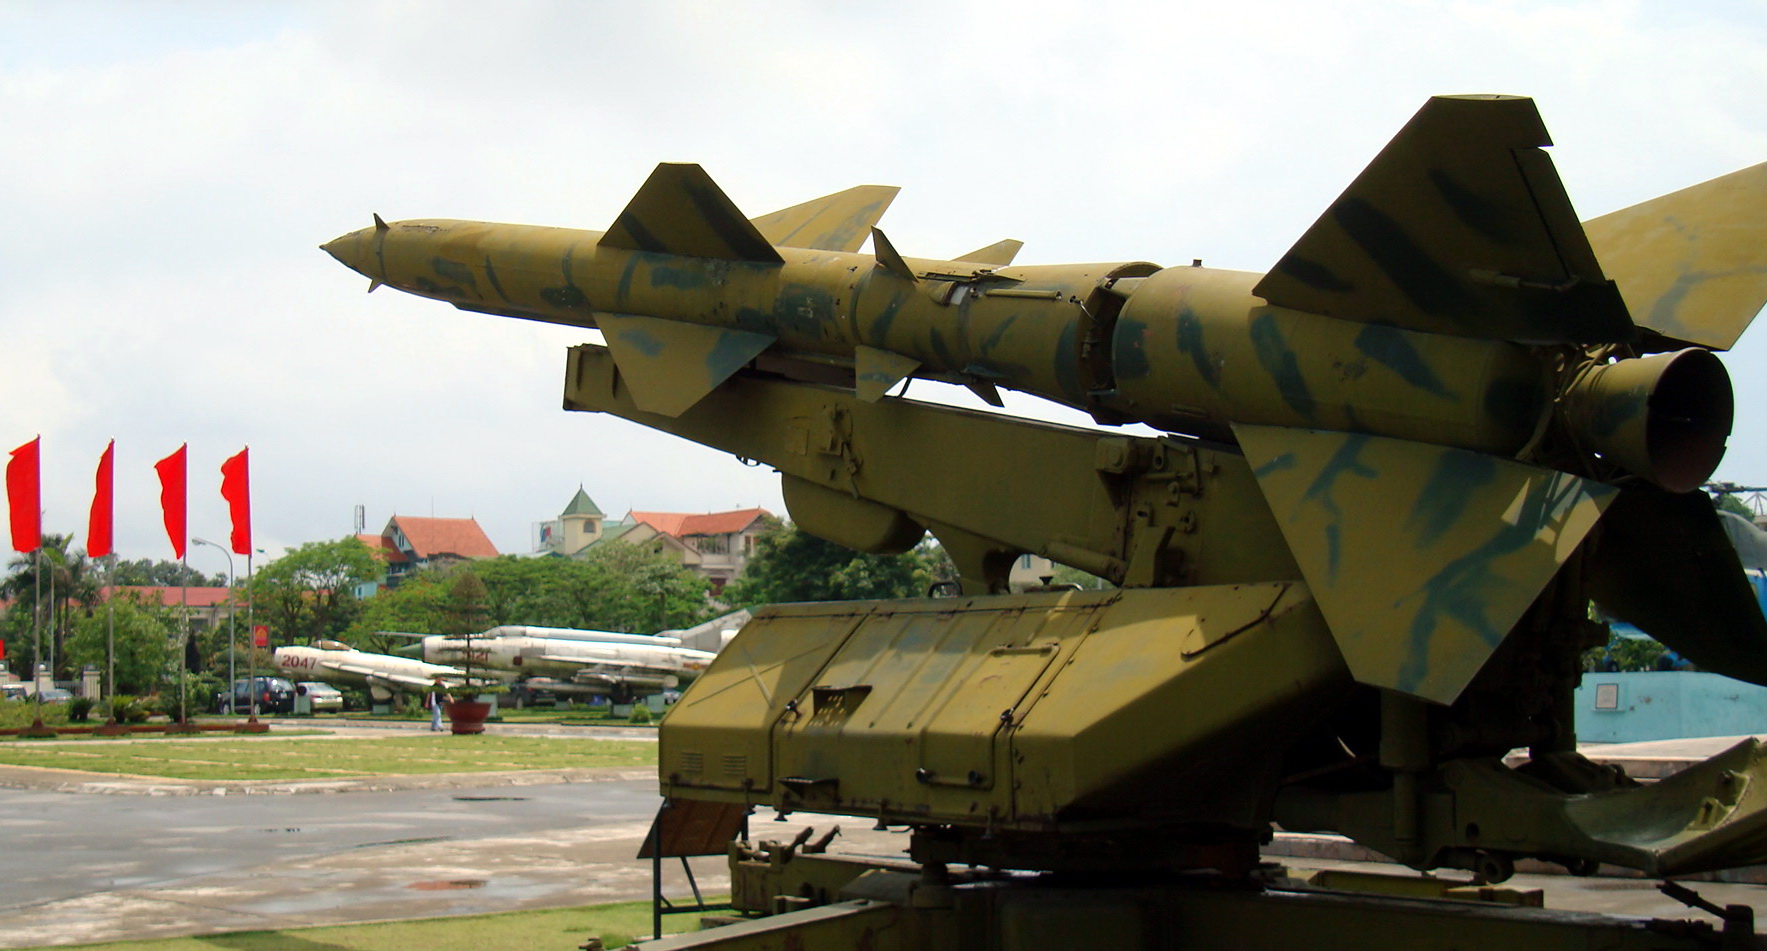 Tên lửa SAM-2 và máy bay MIG trưng bày trong Bảo tàng Phòng không - Không quân Hà Nội. Ảnh: Trần Thắng (TP Vĩnh Long)